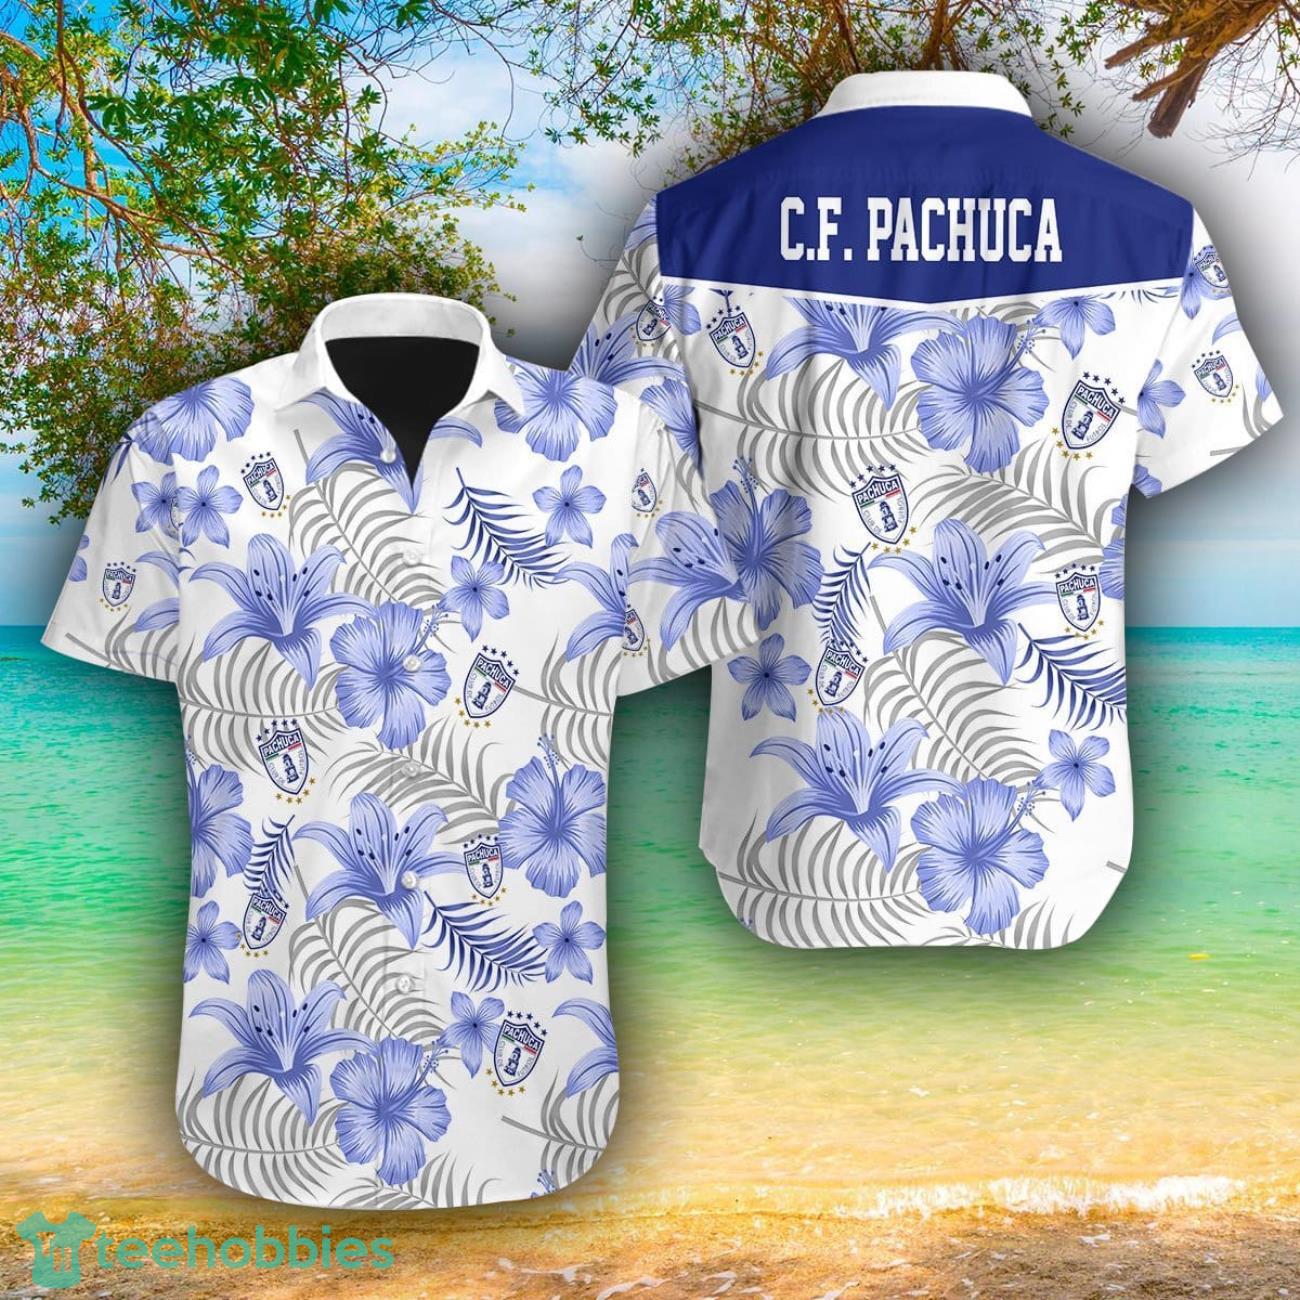 Pachuca AOP Hawaiian Shirt For Men And Women Summer Gift Product Photo 1